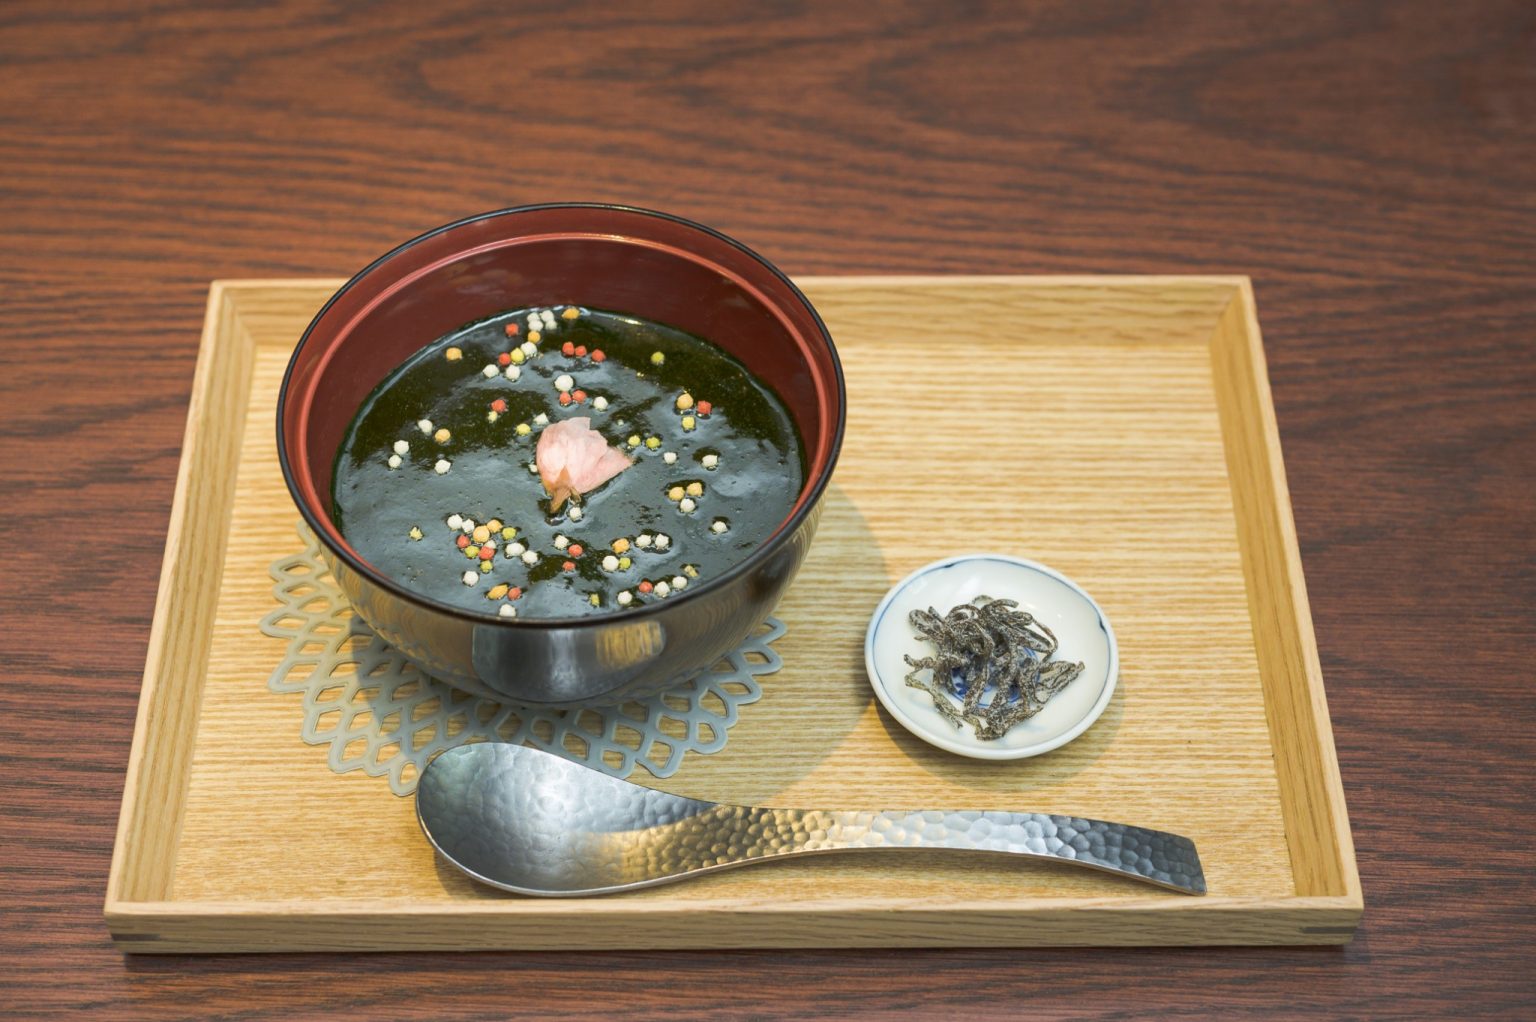 「温かいもちあわの宇治抹茶ぜんざい」1,000円。濃厚な抹茶で覆われた抹茶ぜんざいは新感覚。